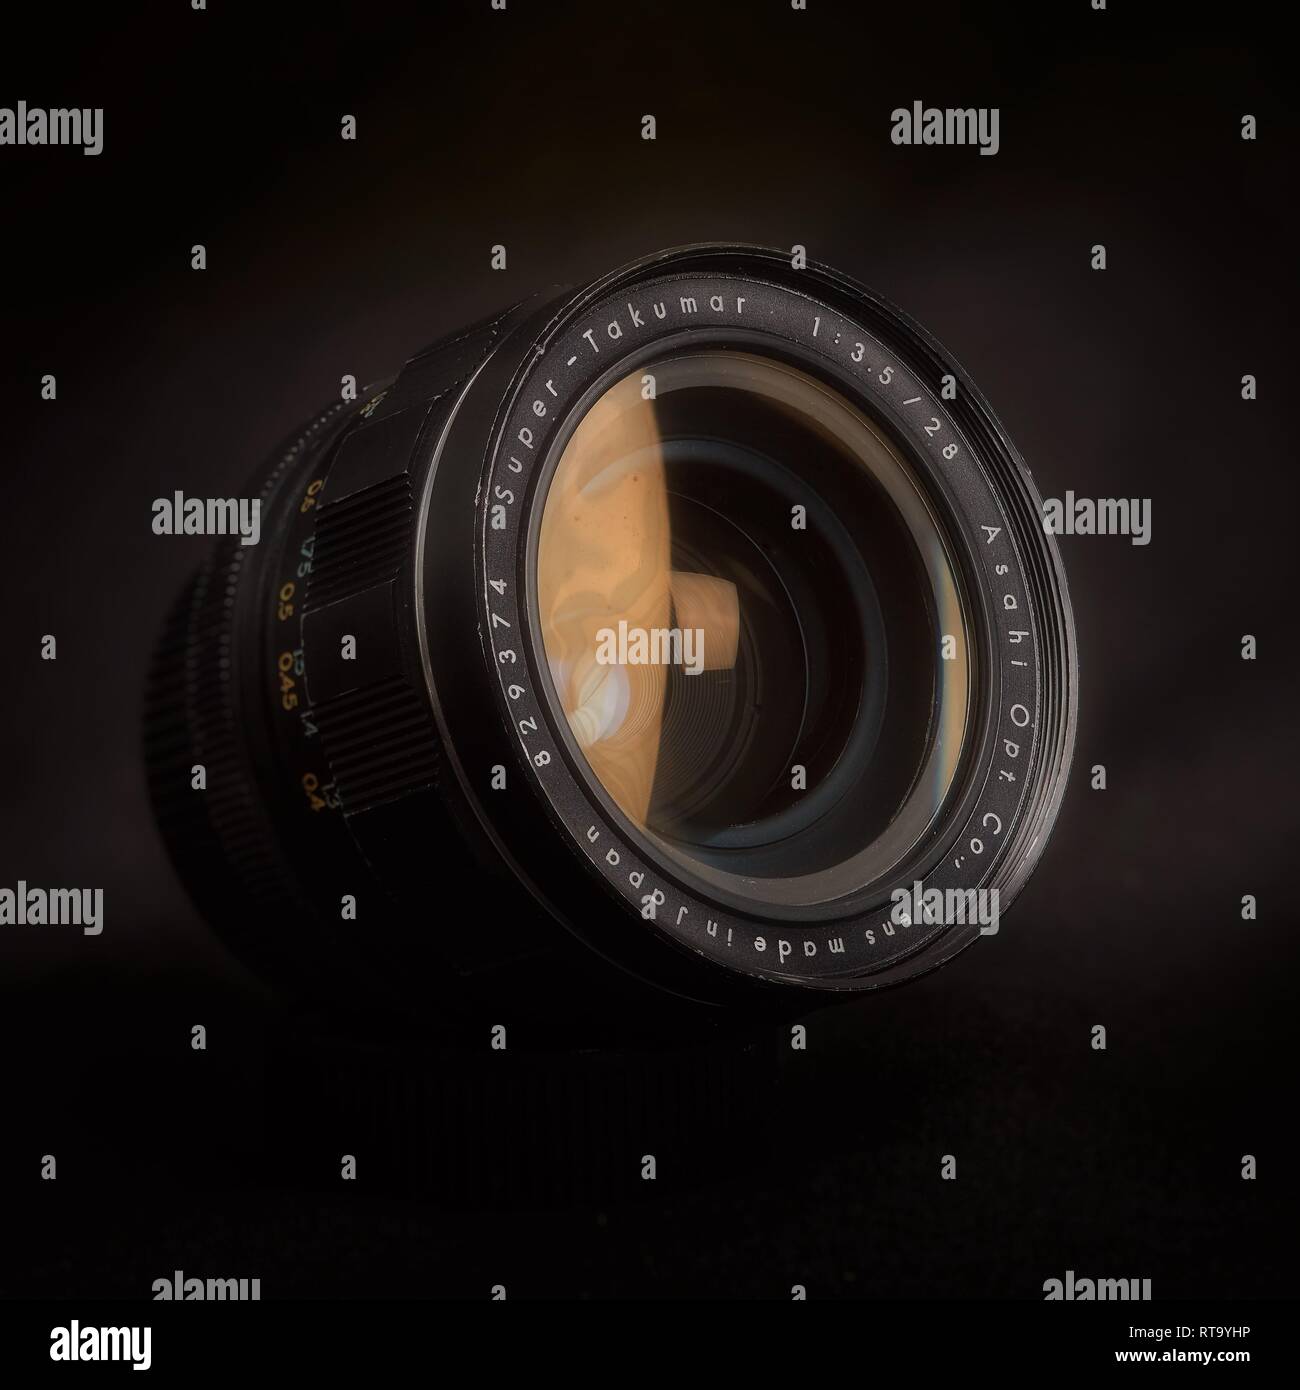 Essex, Großbritannien - 2/28/2019: 28mm Super Takumar Objektiv mit M42 mount vor einem dunklen Hintergrund. Stockfoto